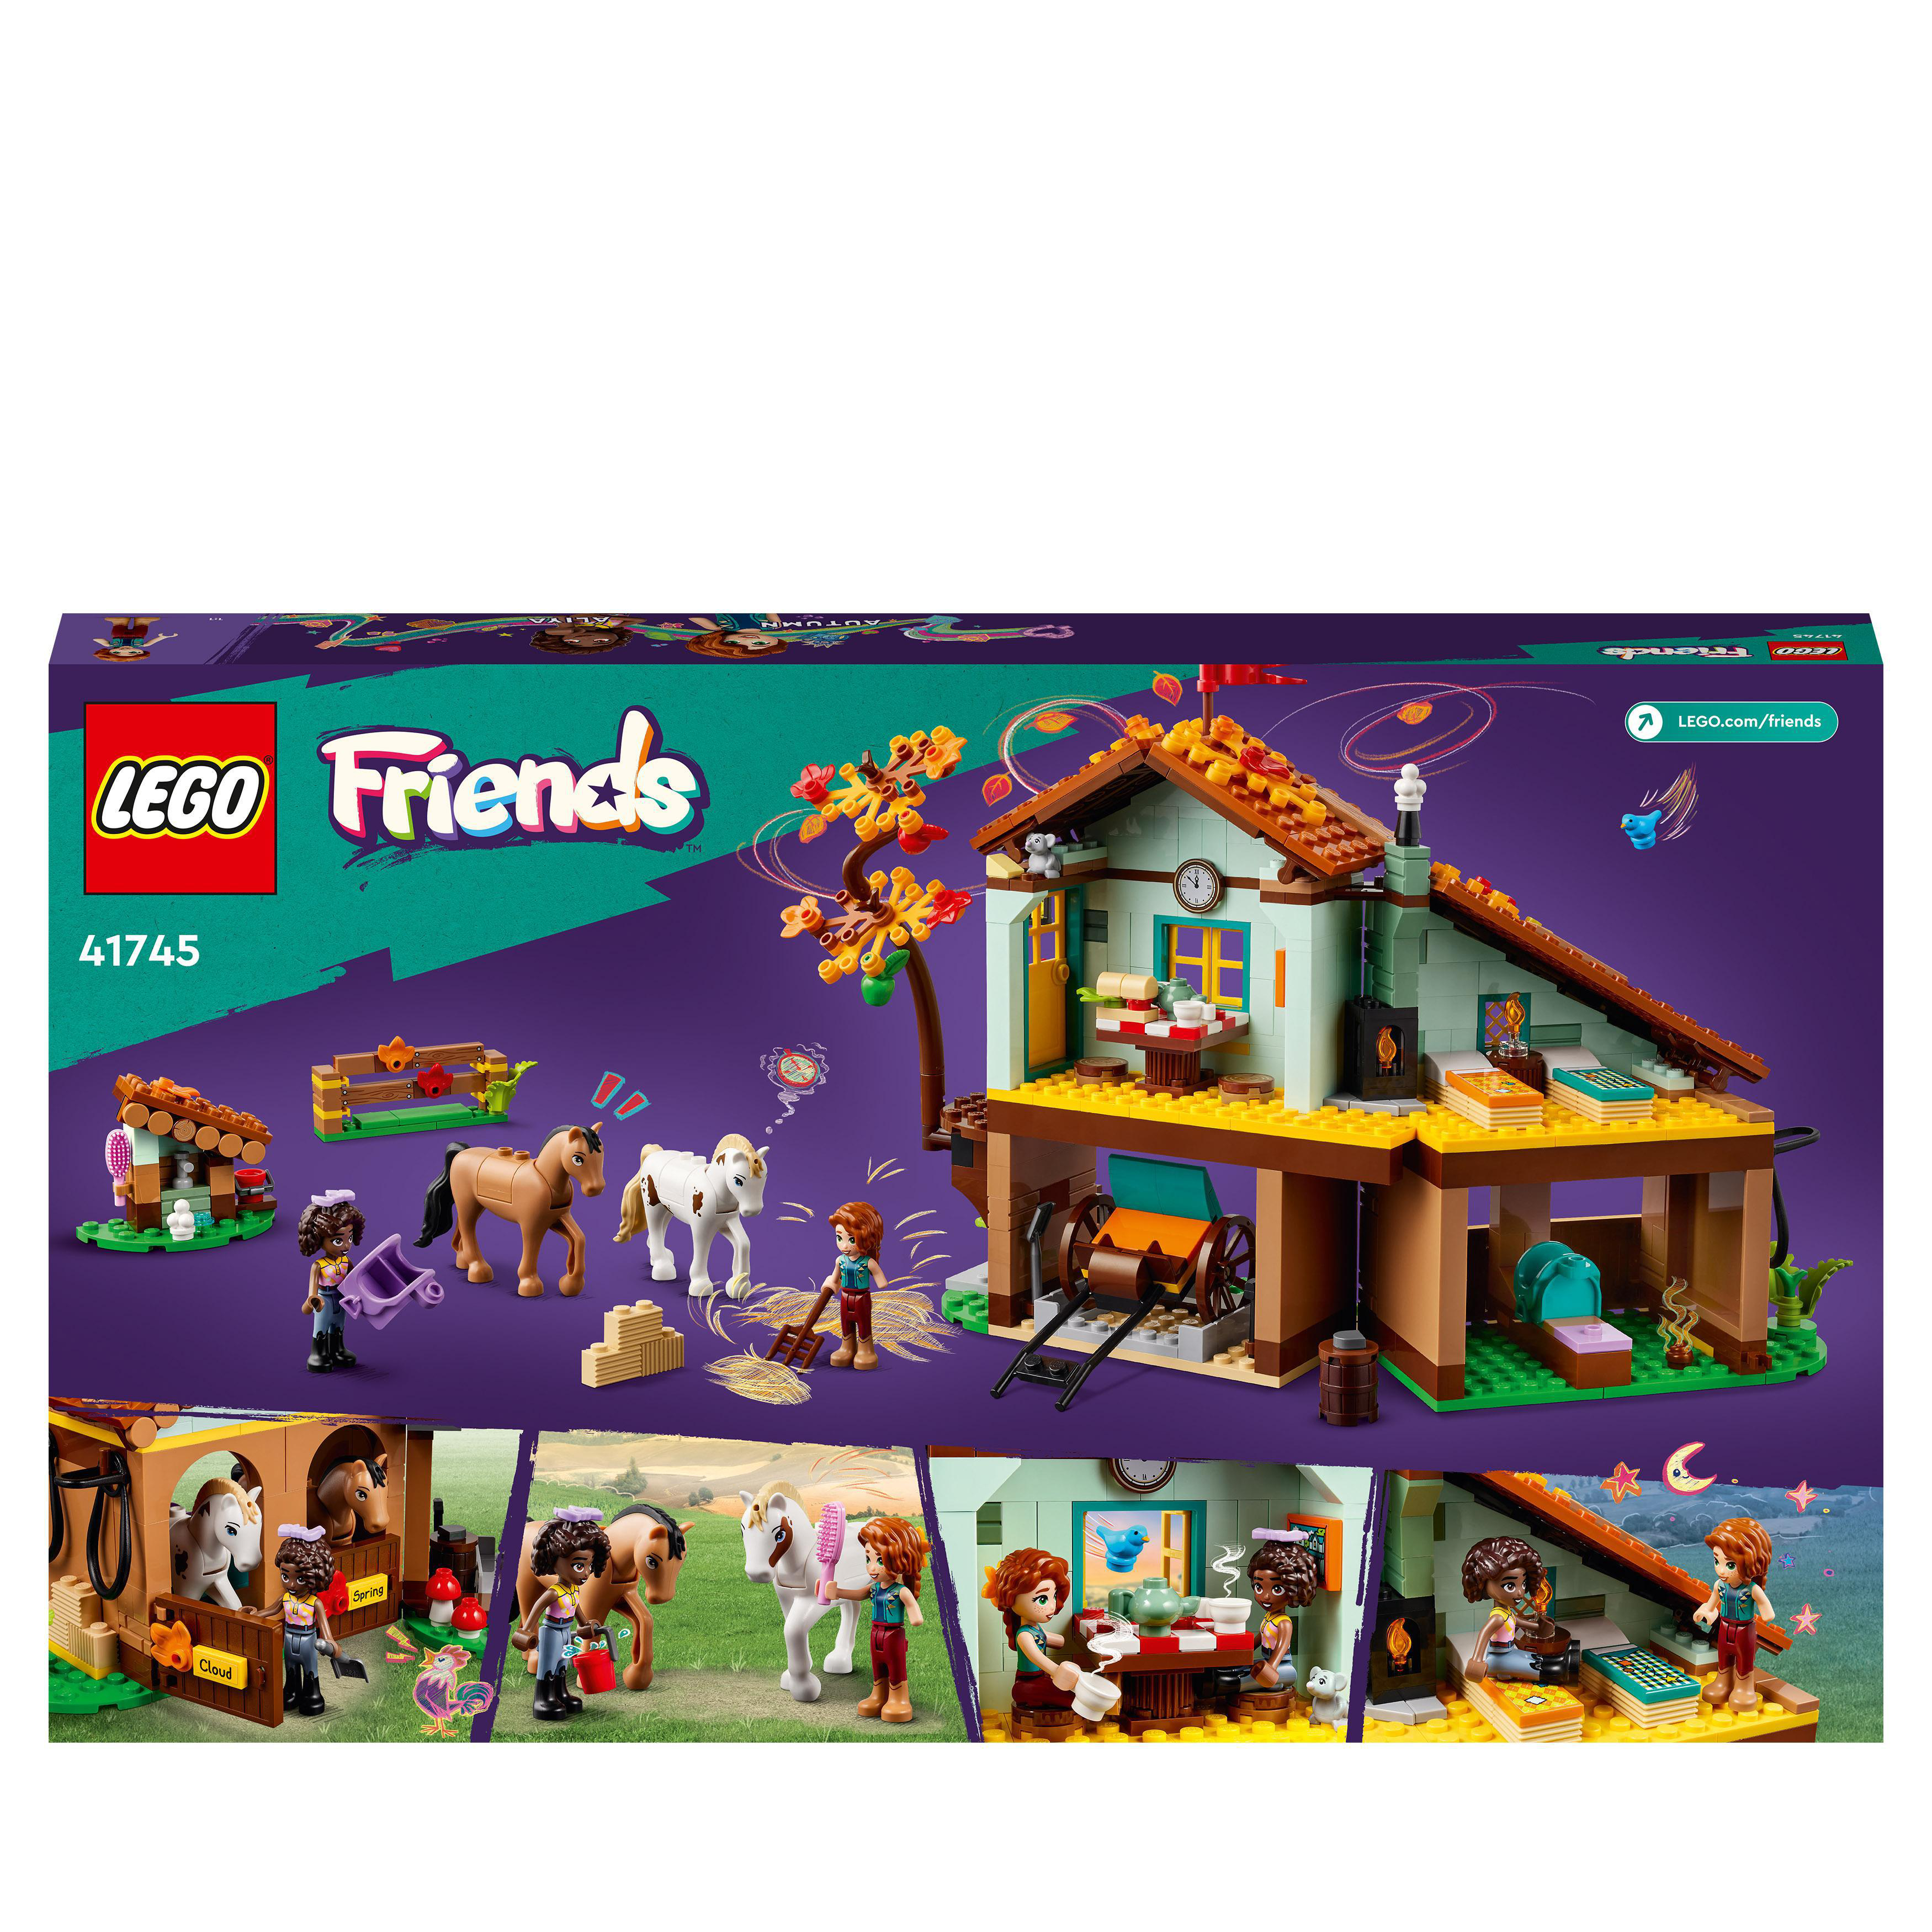 Reitstall Bausatz, Mehrfarbig Friends 41745 LEGO Autumns